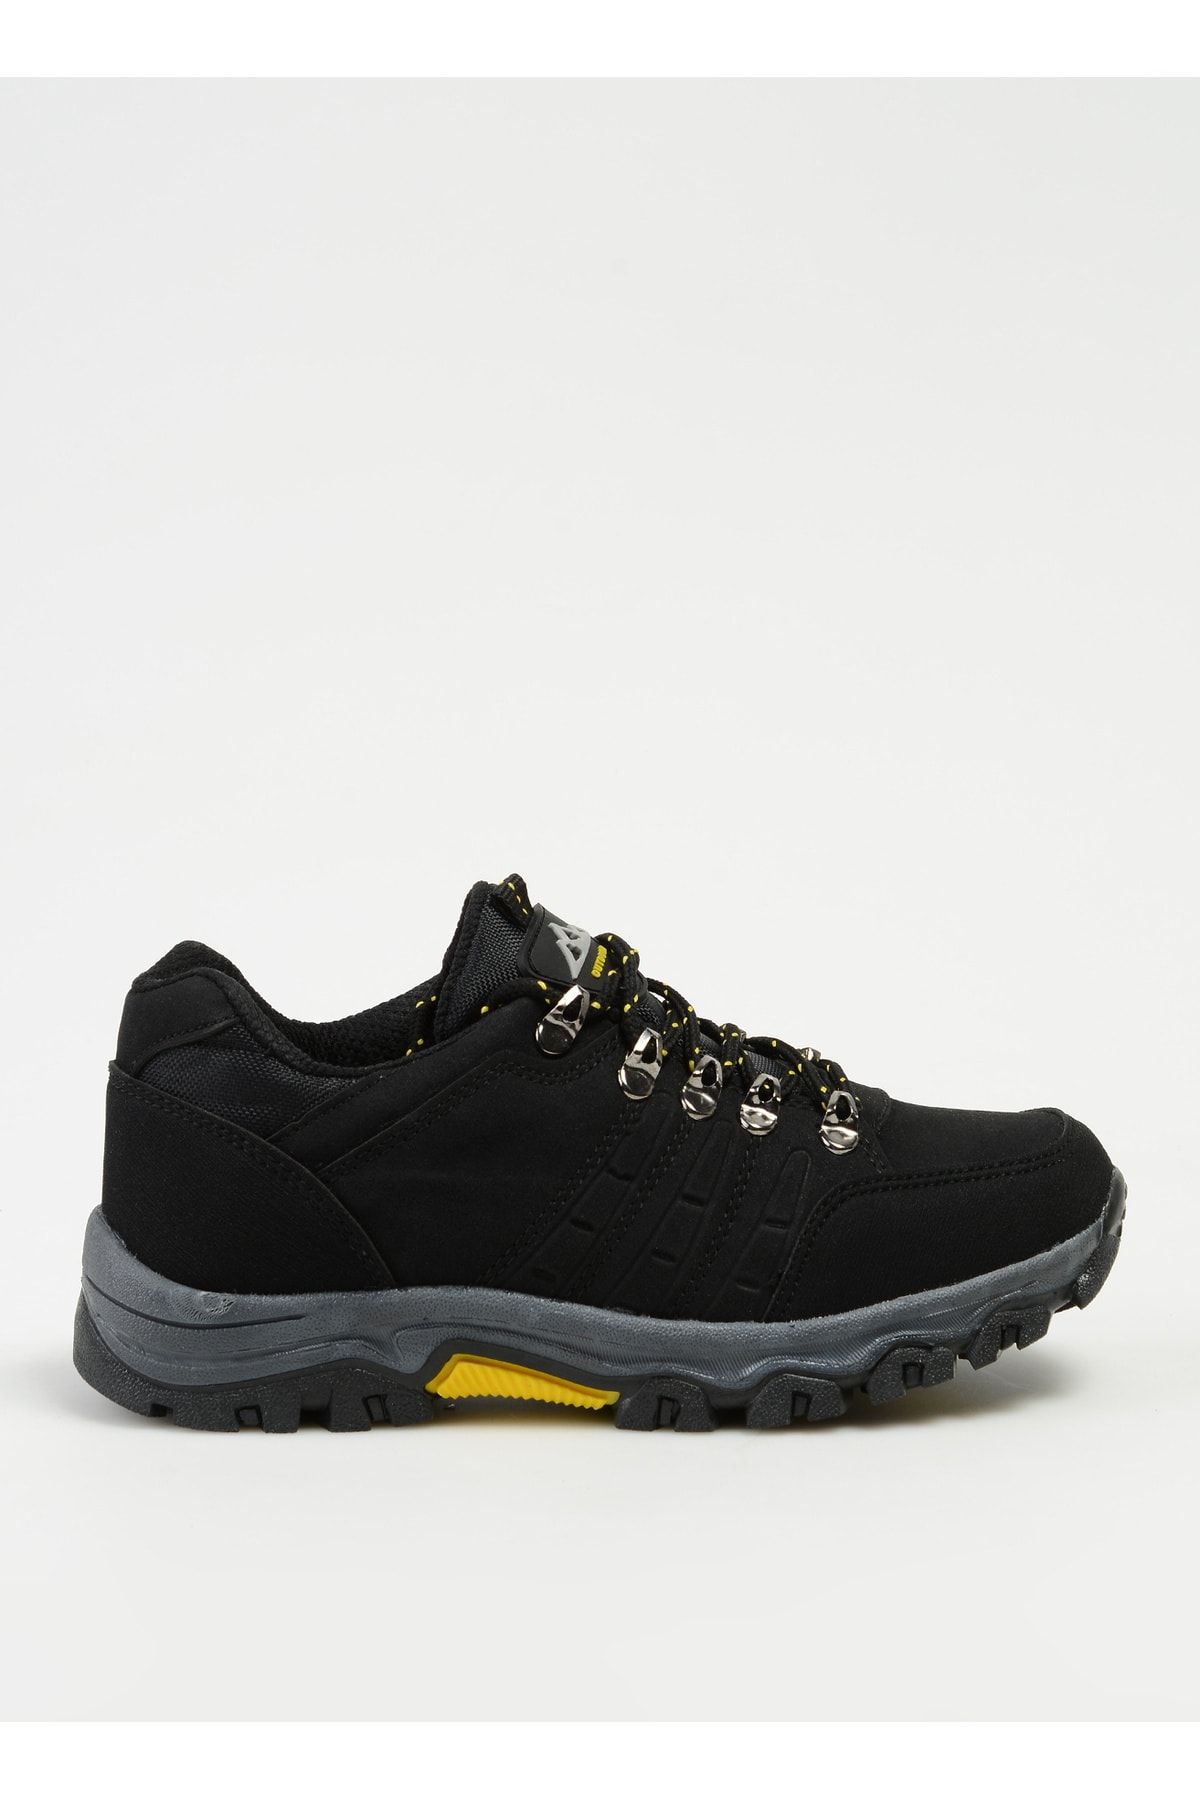 F By Fabrika Siyah - Sarı Kadın Outdoor Ayakkabısı LADAX